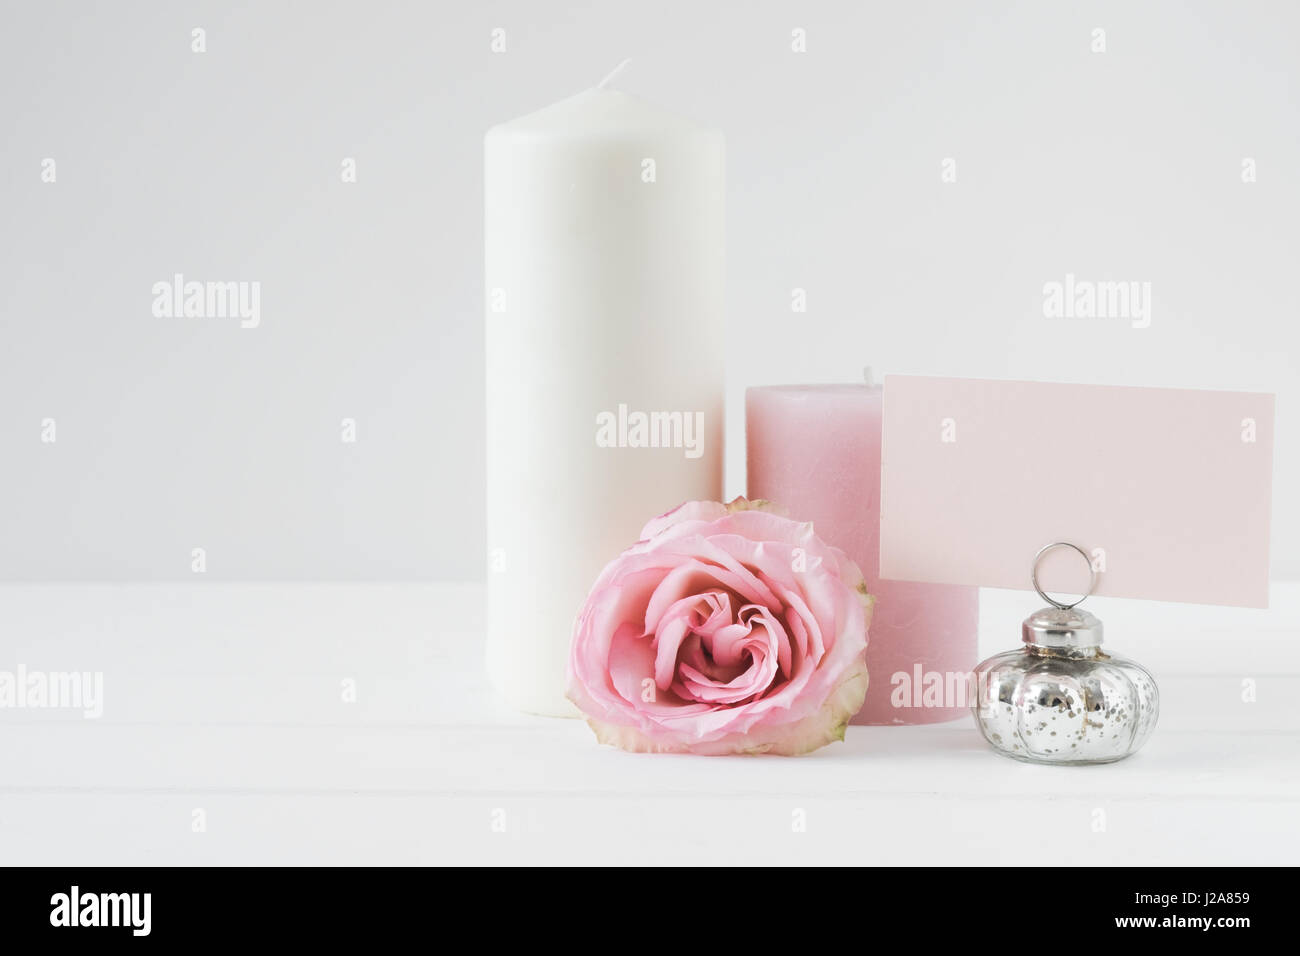 Floral gestalteten Stockfotografie mit weißen kopieren Sie Platz für Ihr eigenes Geschäft Nachricht, Förderung, Schlagzeile, ideal für Blogging und social Media Kampagne Stockfoto